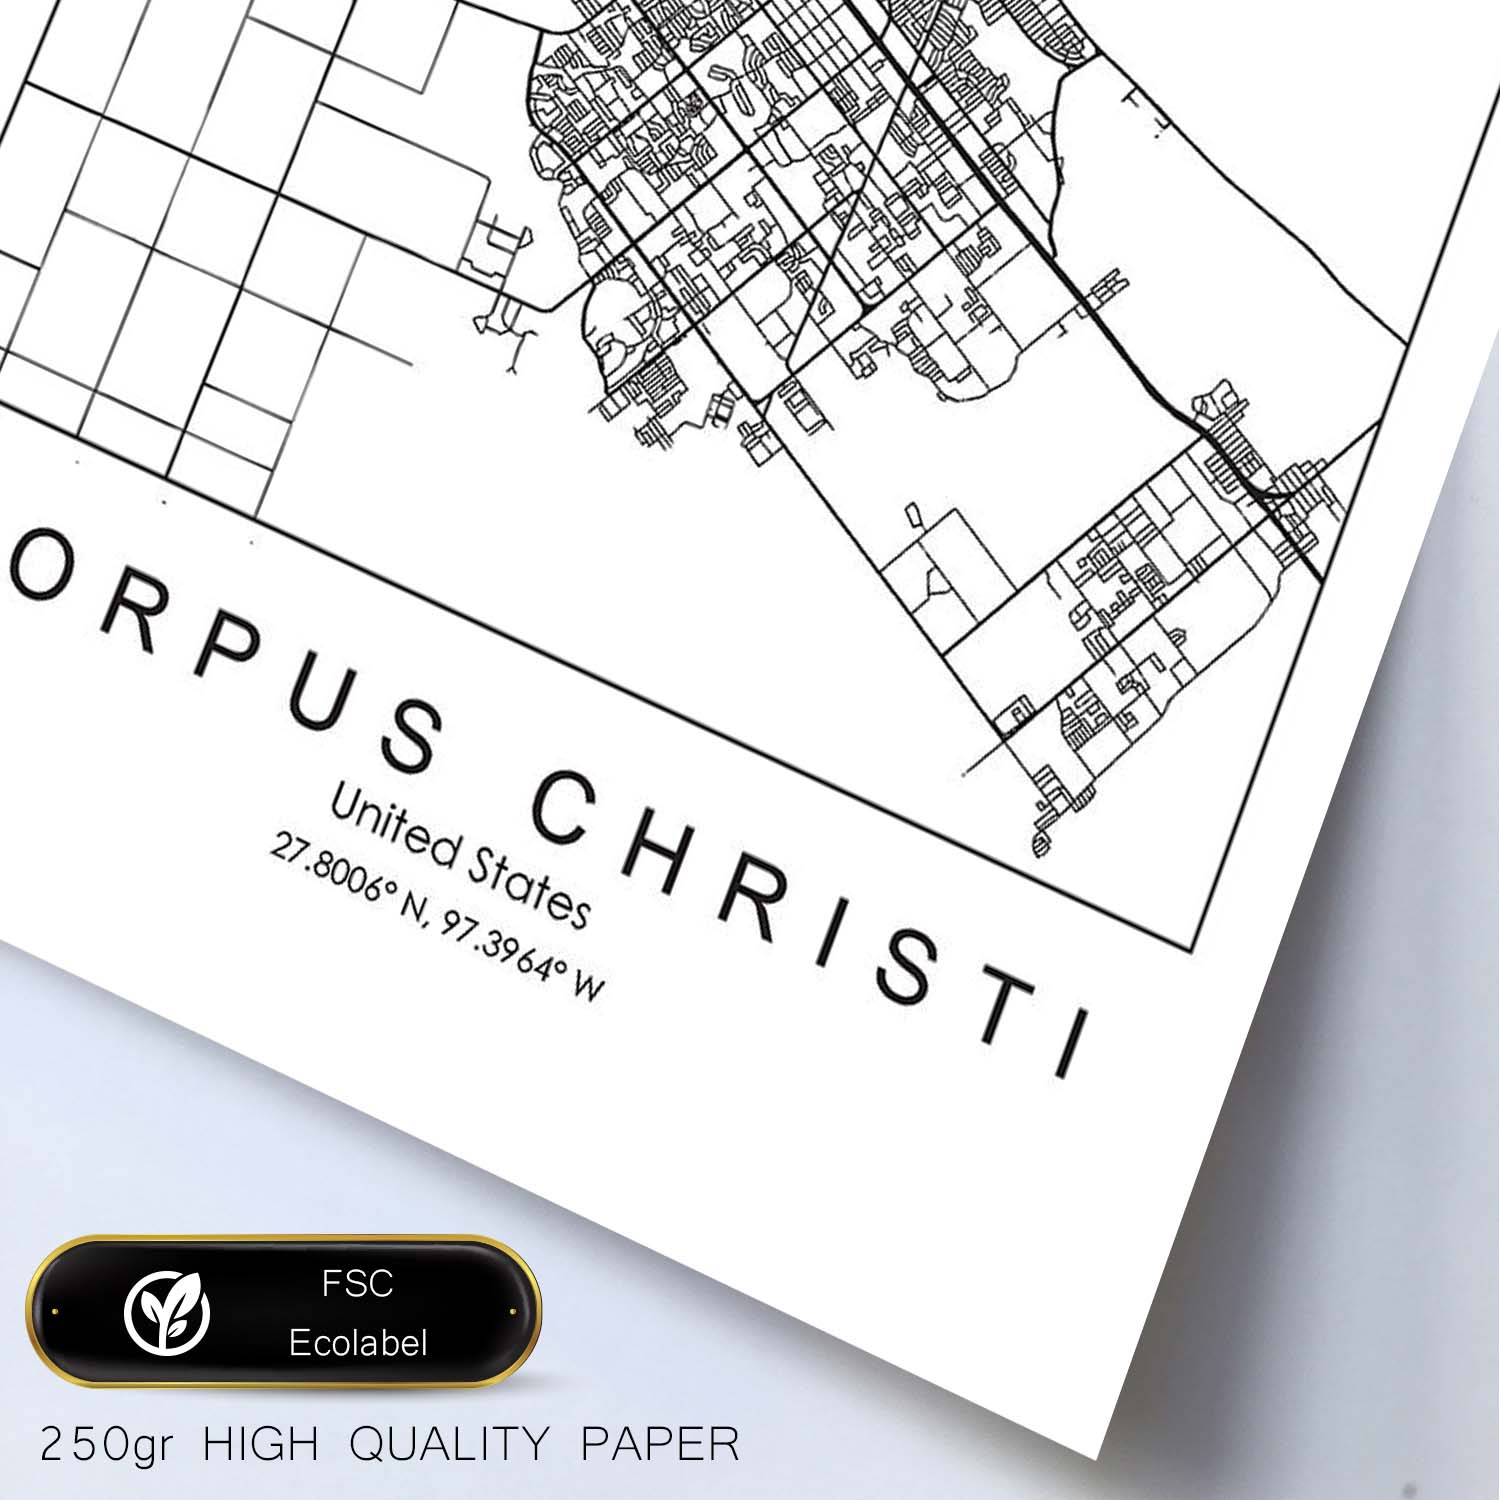 Poster con mapa de Corpus Christi. Lámina de Estados Unidos, con imágenes de mapas y carreteras-Artwork-Nacnic-Nacnic Estudio SL